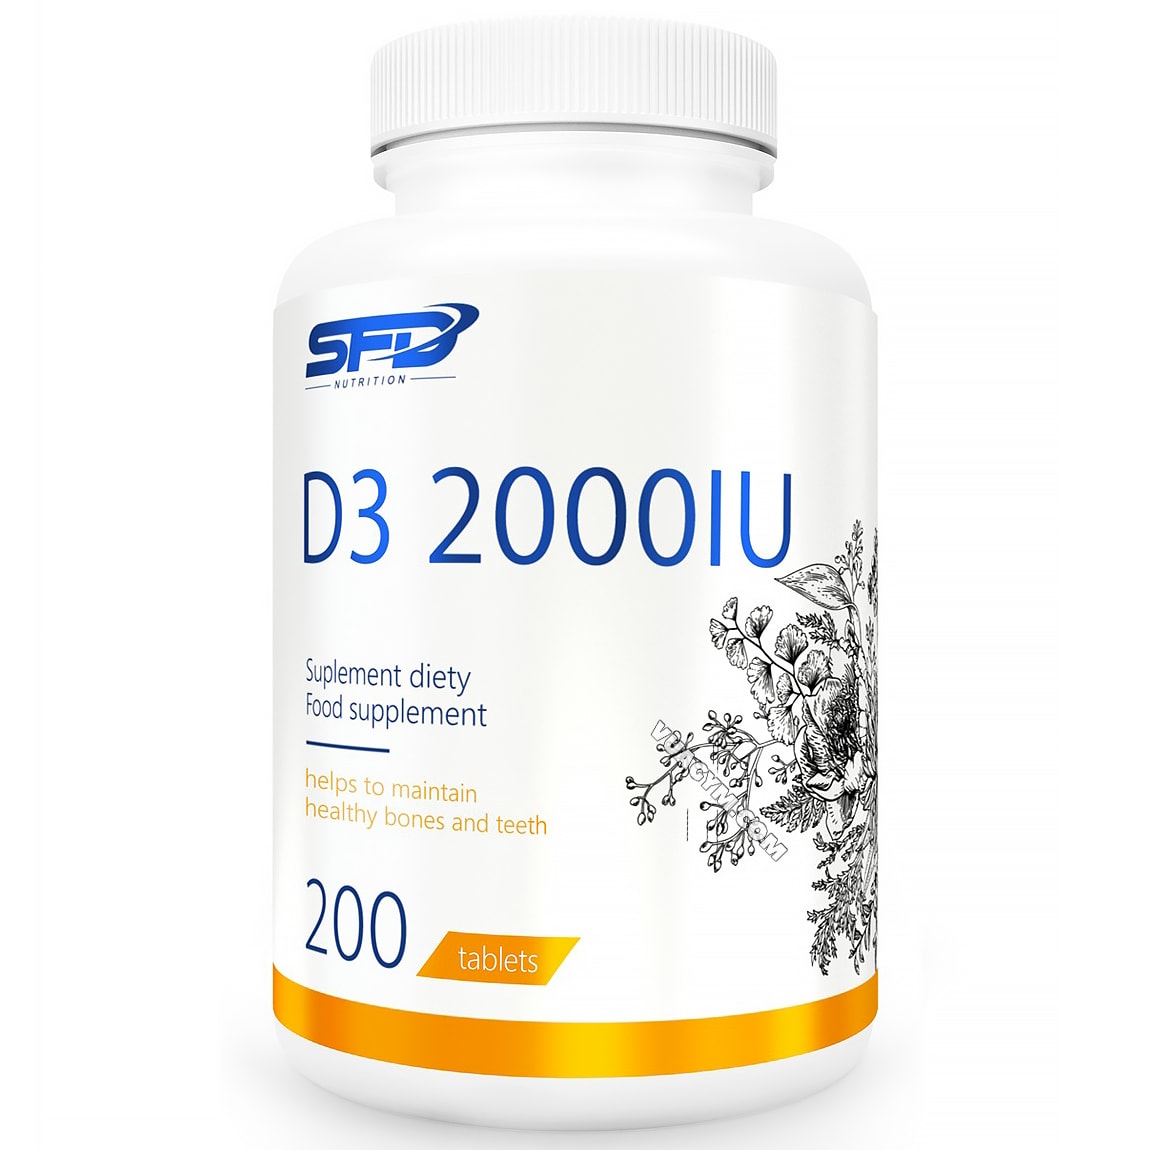 Tại sao Vitamin D3 2000IU được coi là vitamin ánh nắng?
